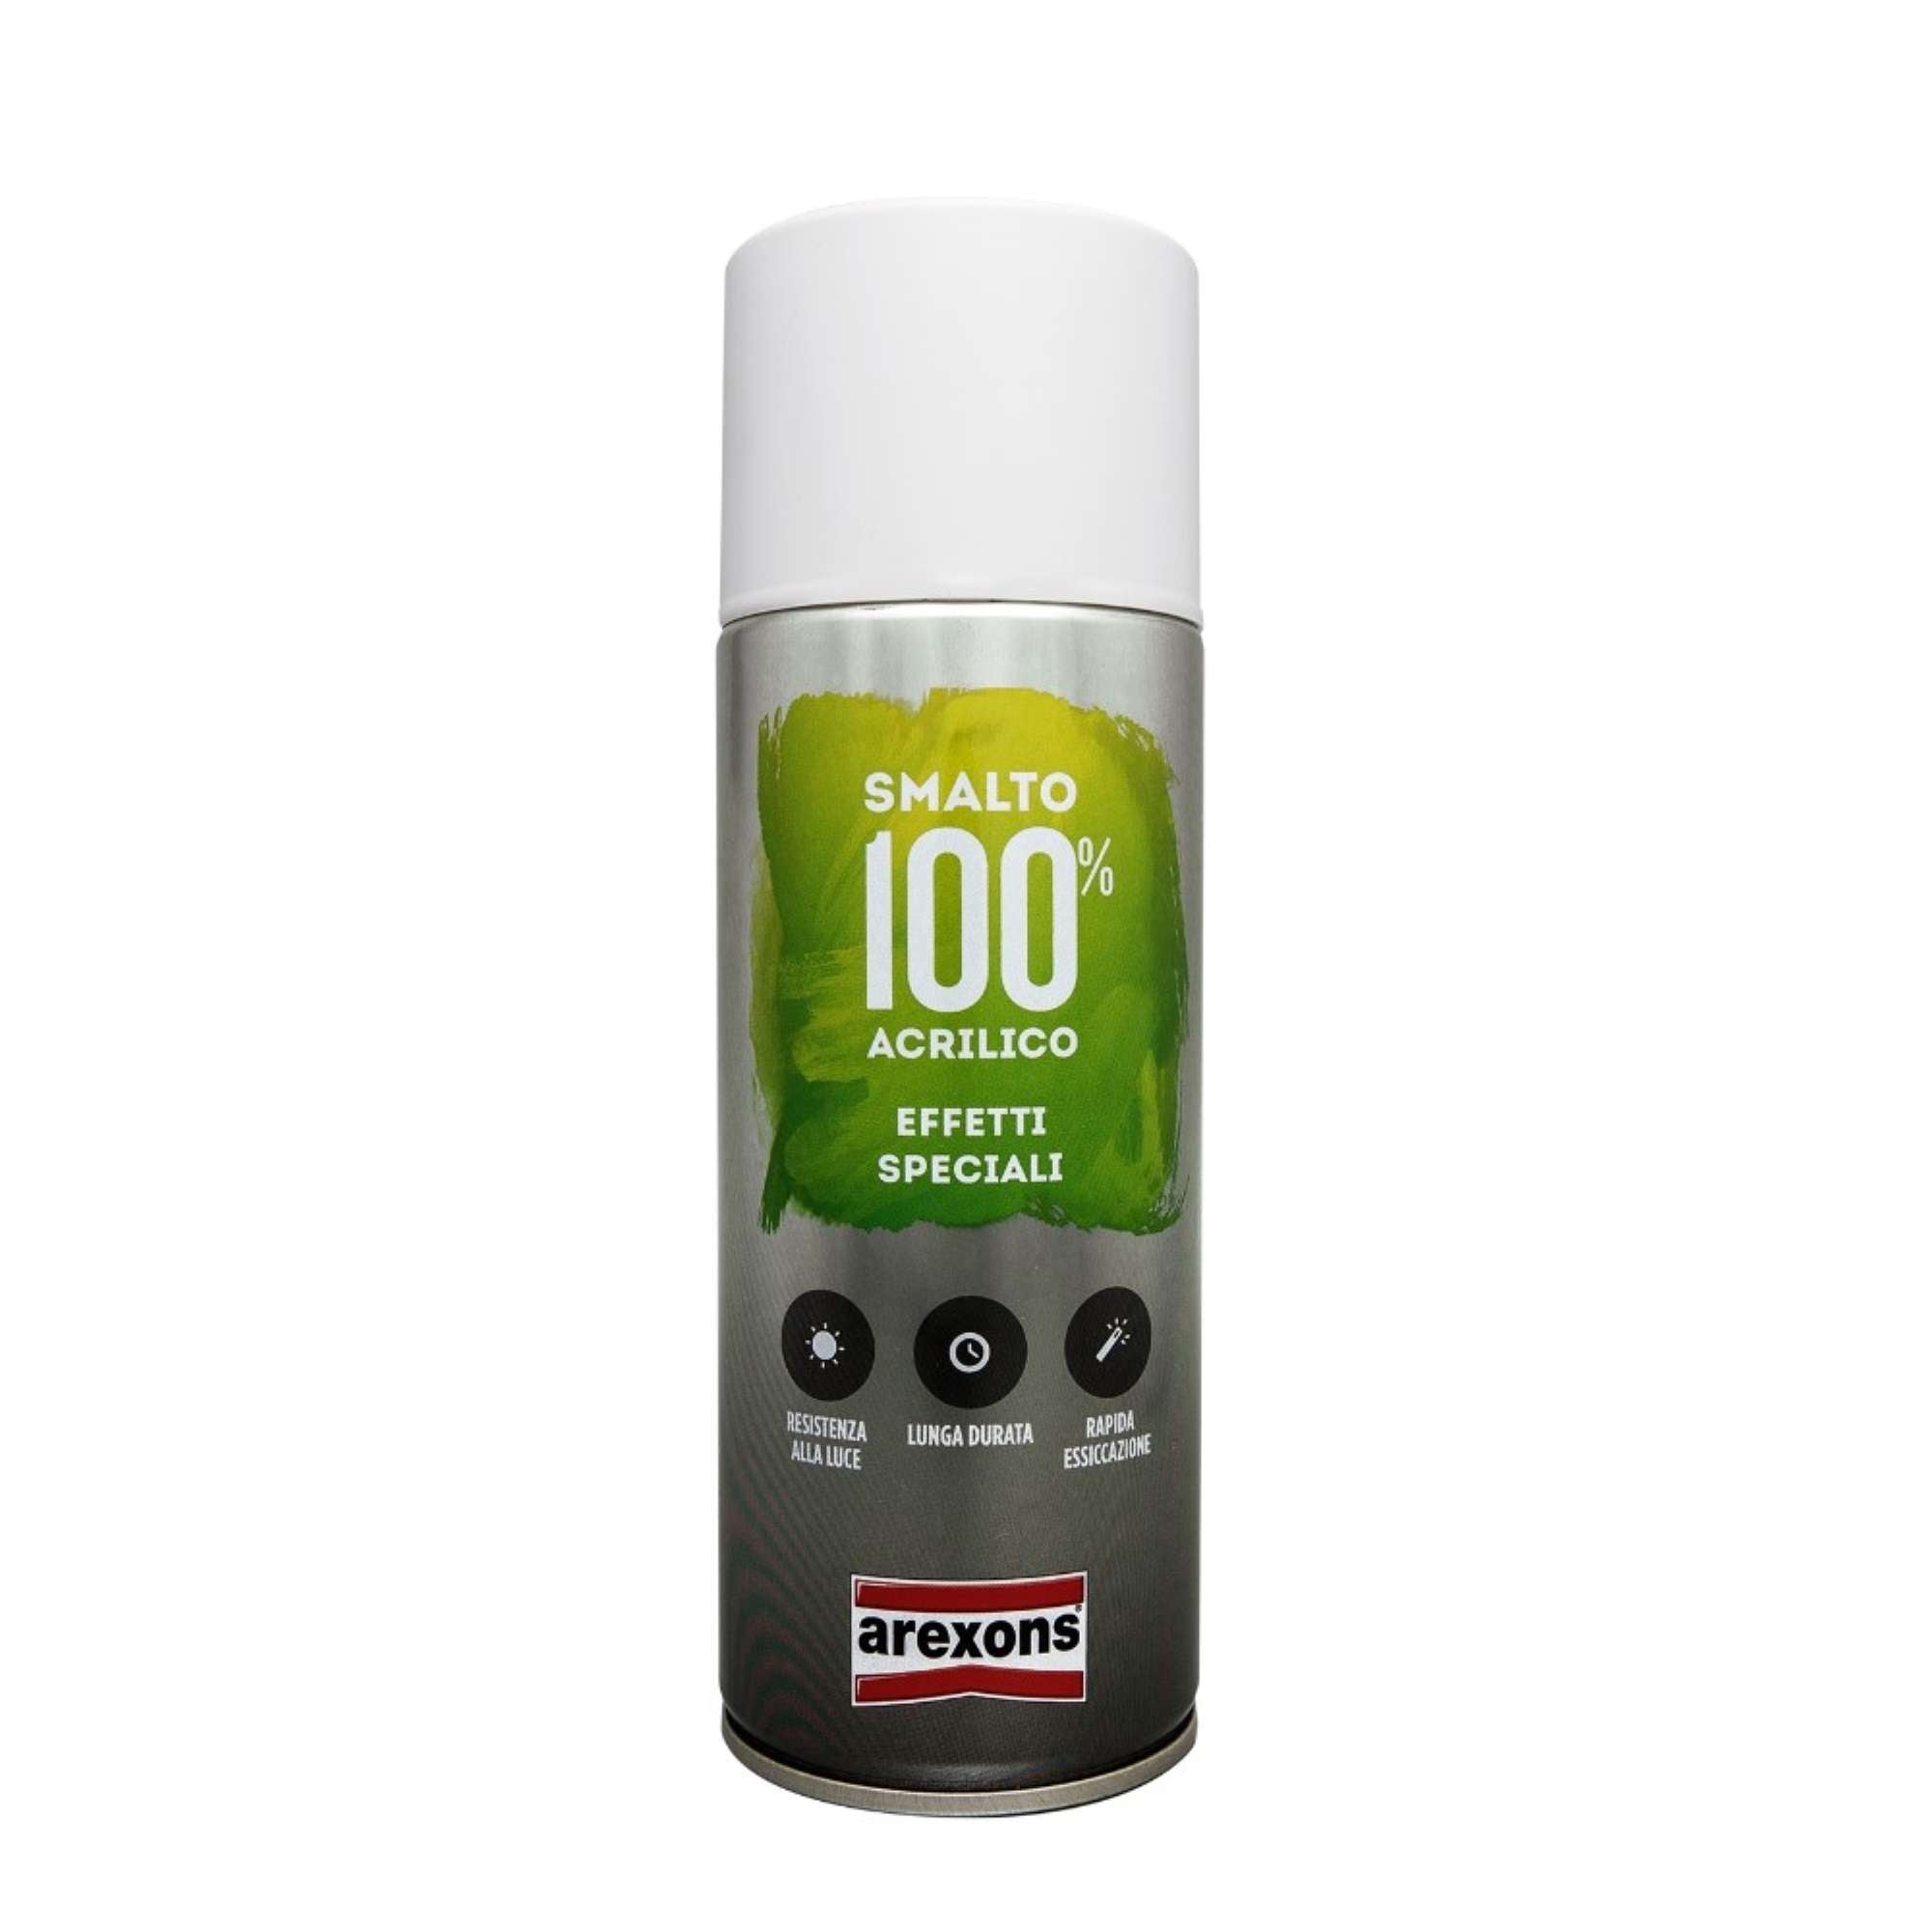 Smalto spray 100% acrilico effetti speciali argento 400ml - Arexons 3673